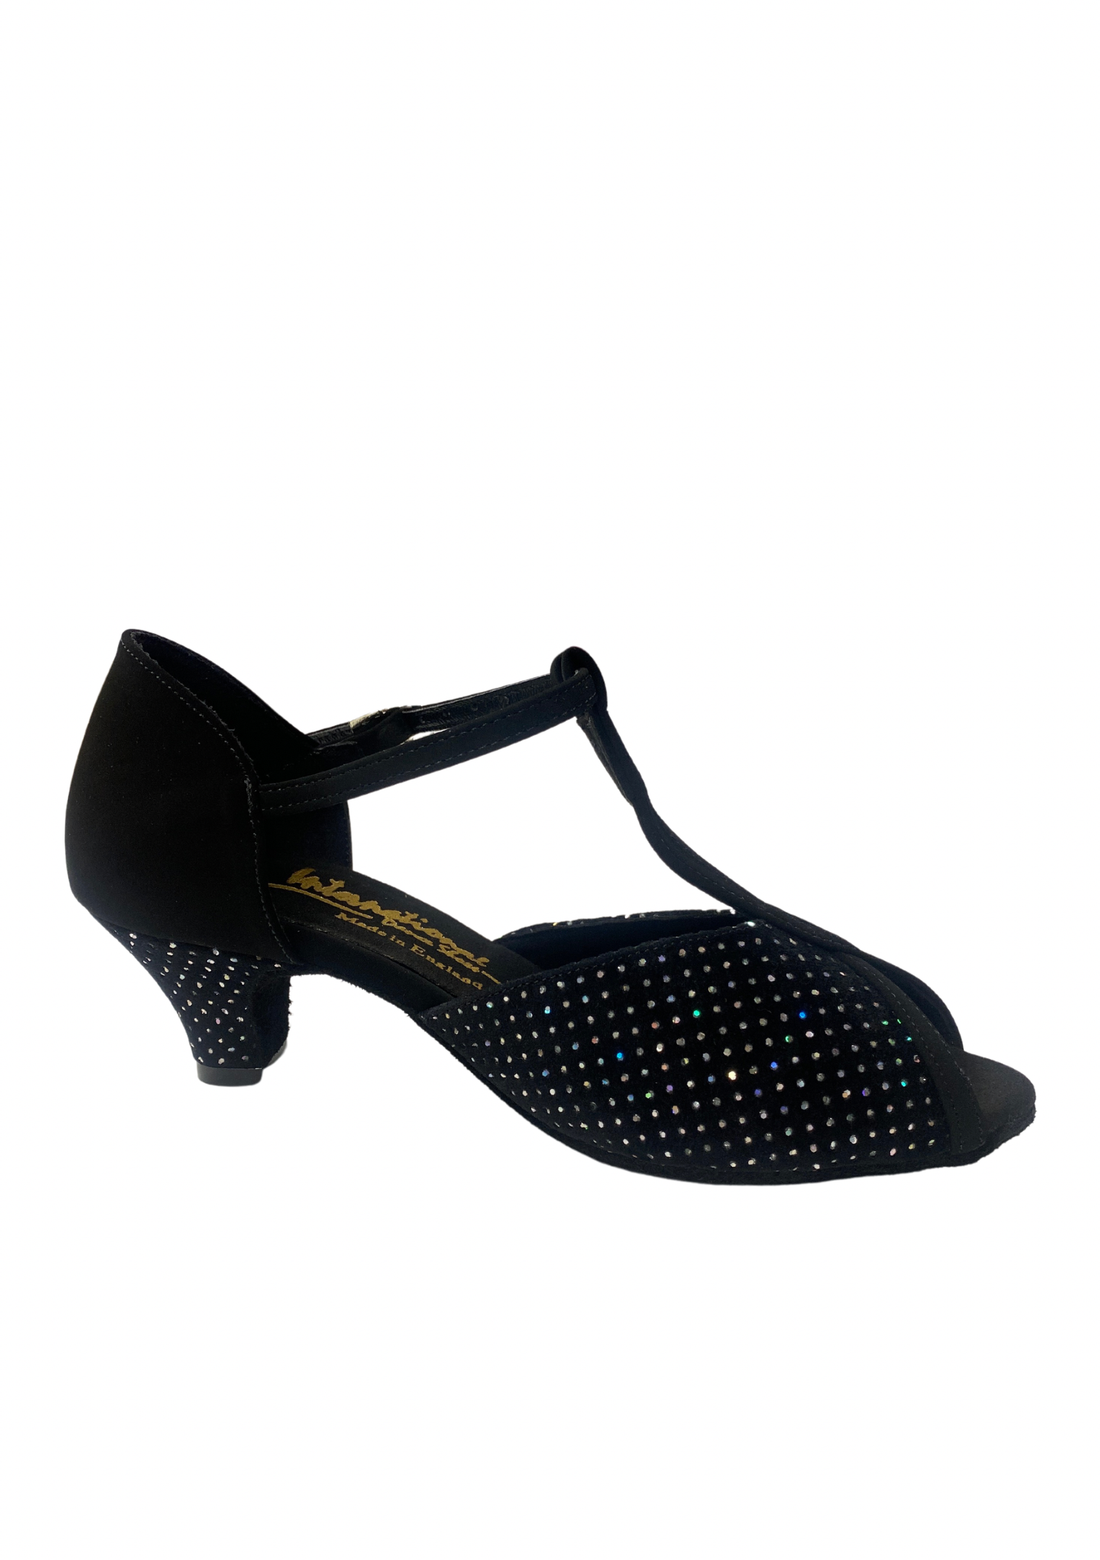 International Dance Shoes Vienna Black Nubuck/Sliver Hologram